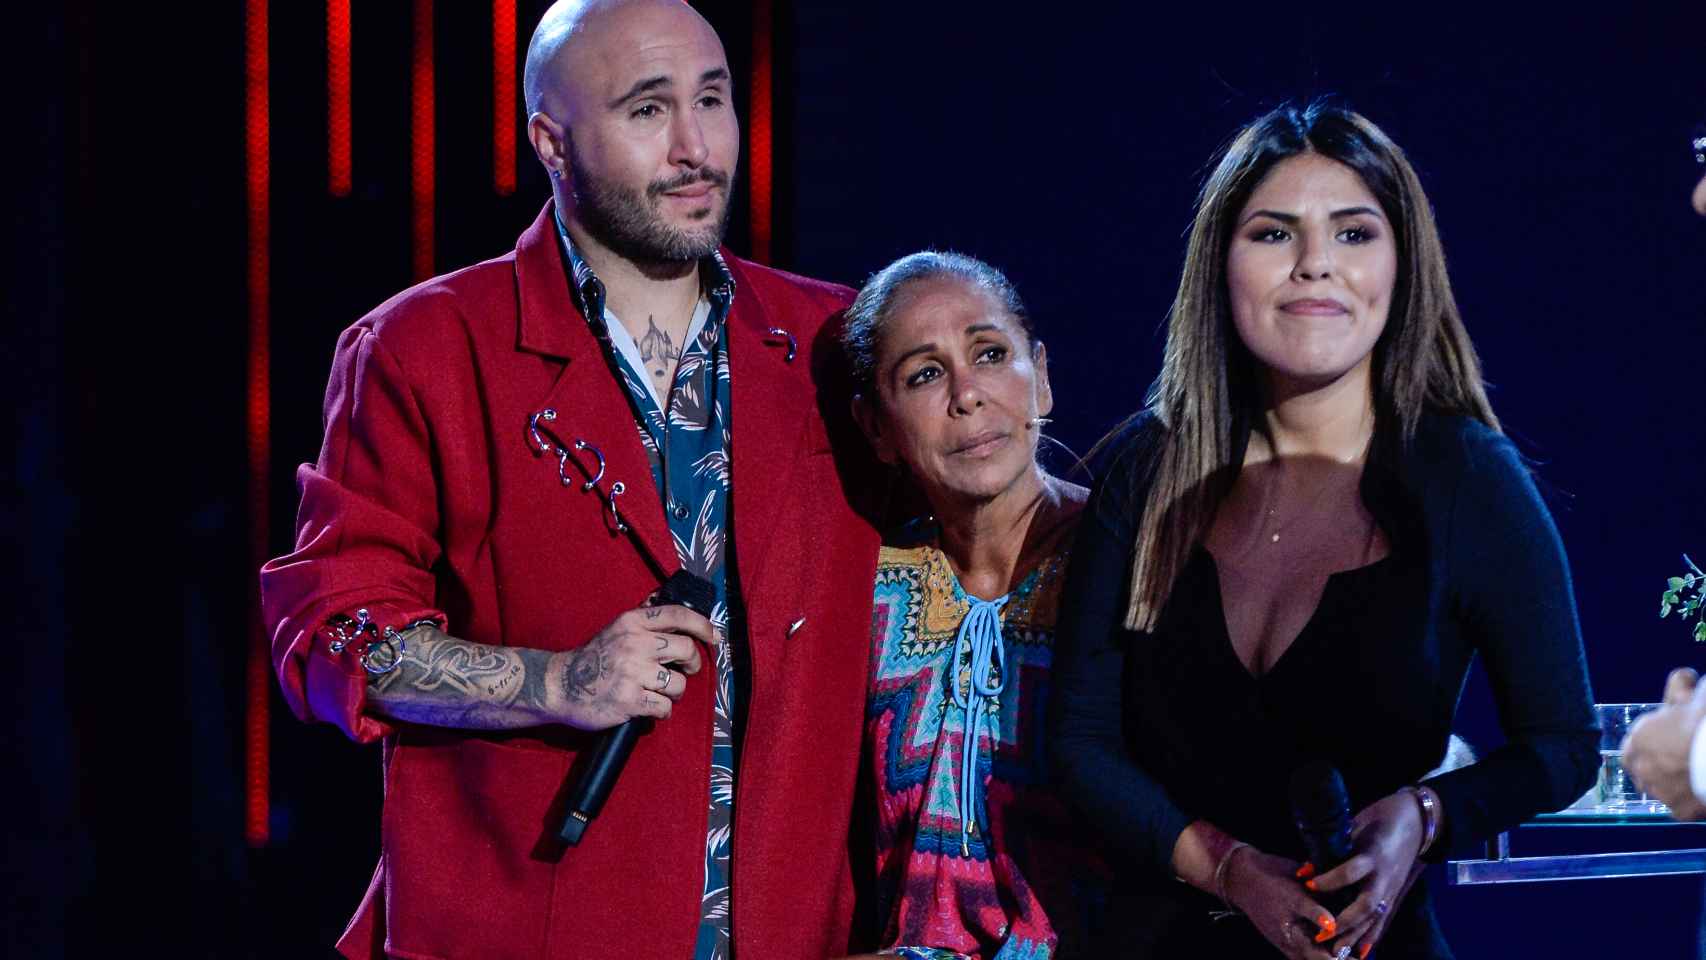 Una de las últimas imágenes públicas de Isabel Pantoja junto a sus dos hijos, a su llegada de 'Supervivientes', en 2019.